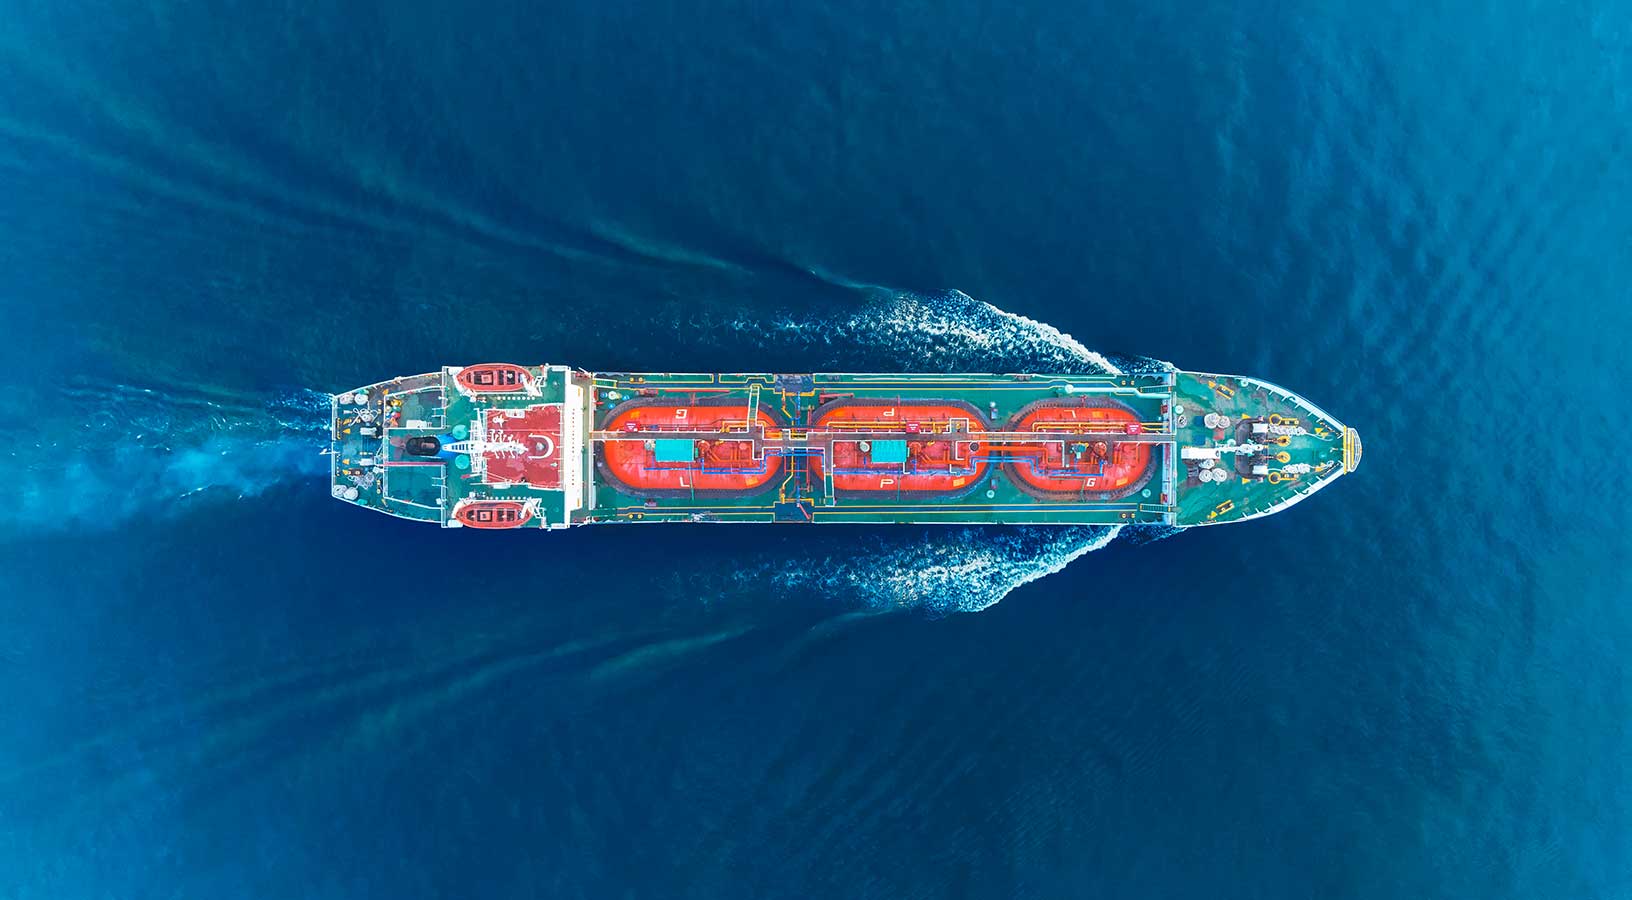 Uma vista aérea de uma embarcação de dragagem navegando para a direita da imagem.